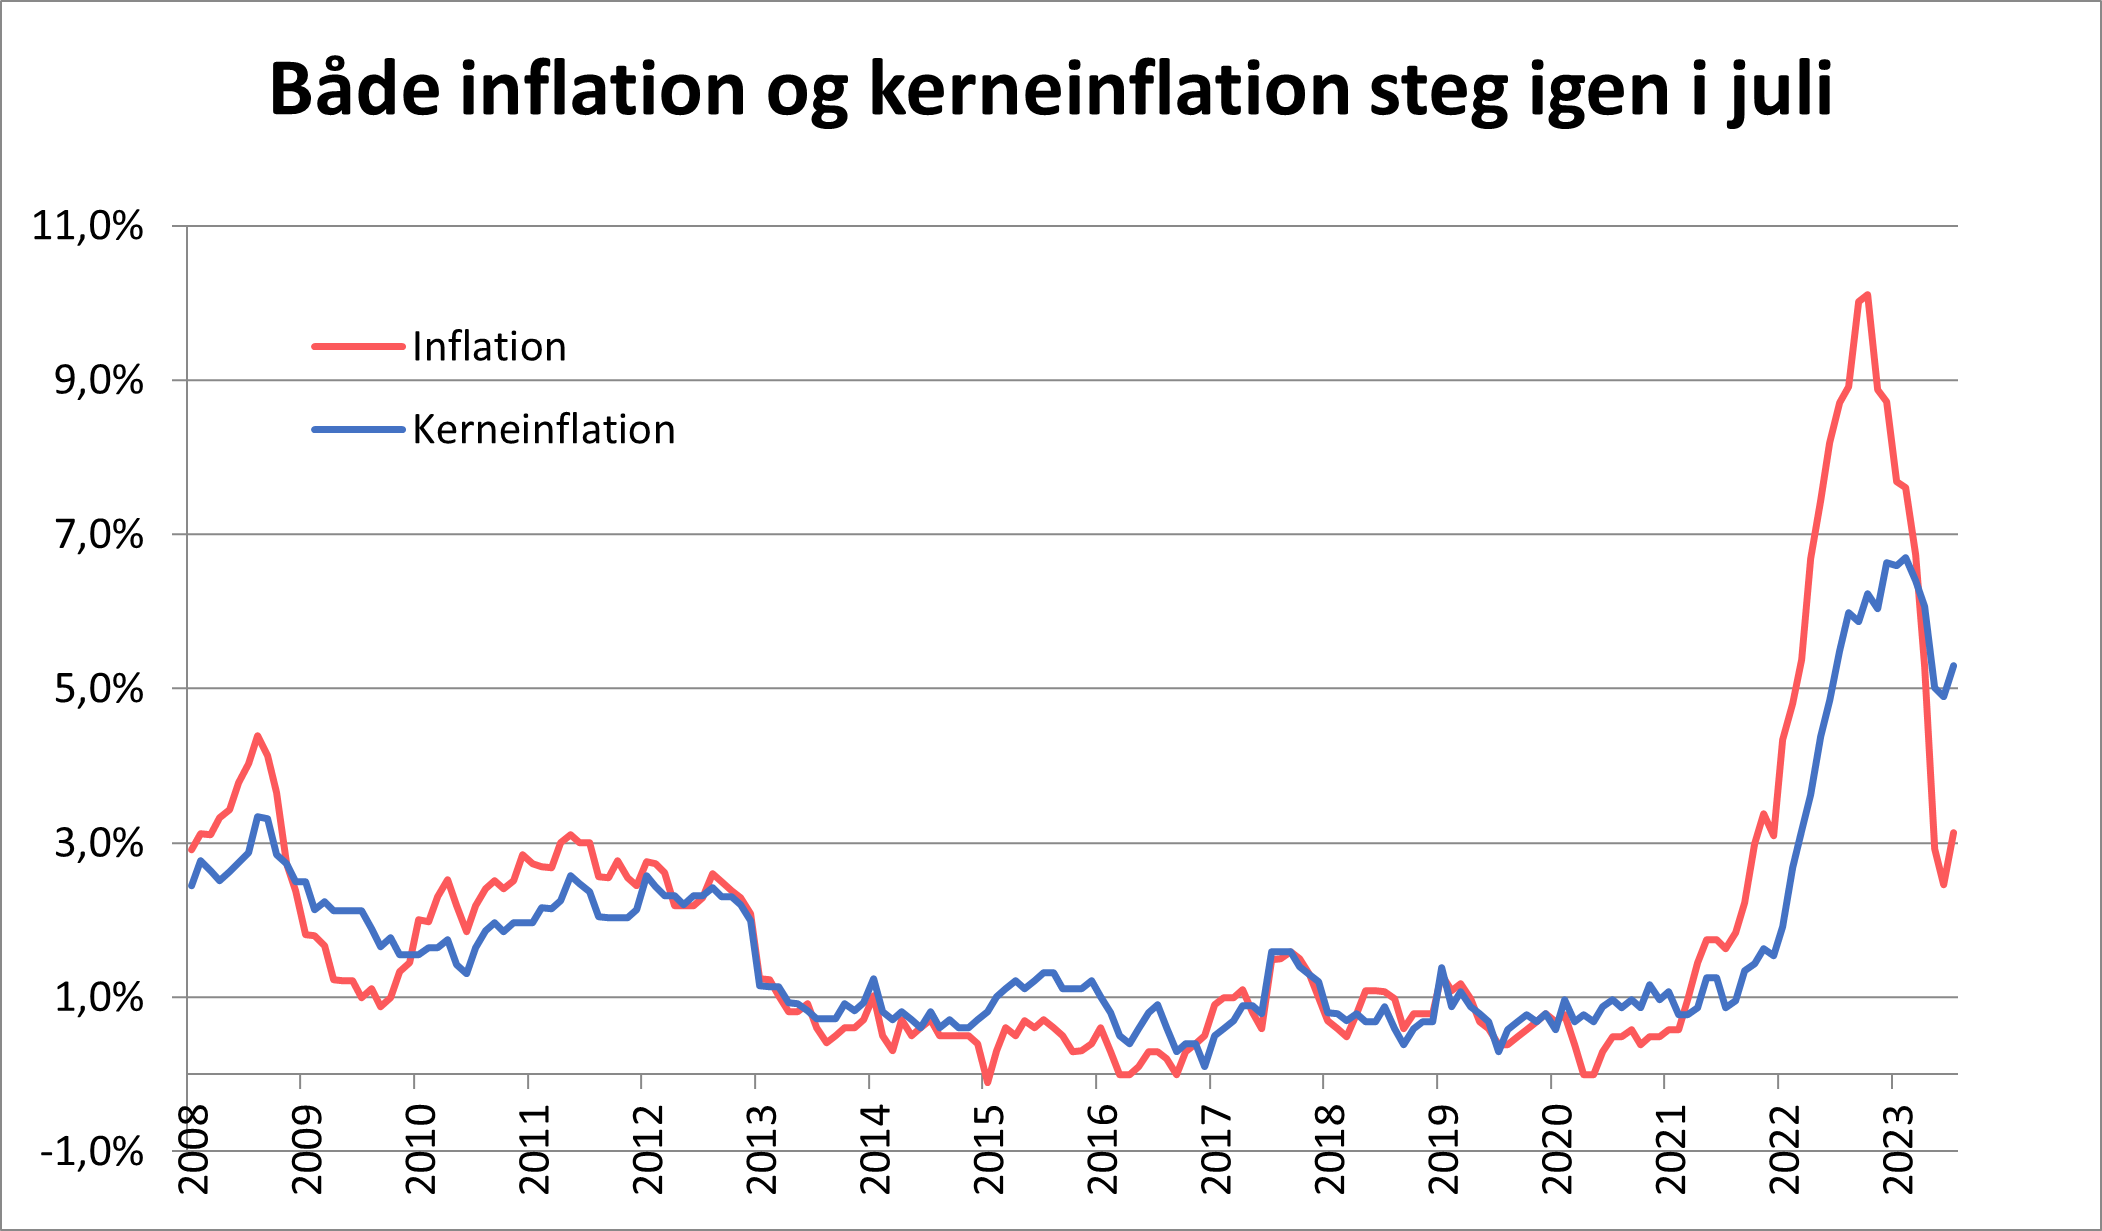 Både inflation og kerneinflation steg igen i juli